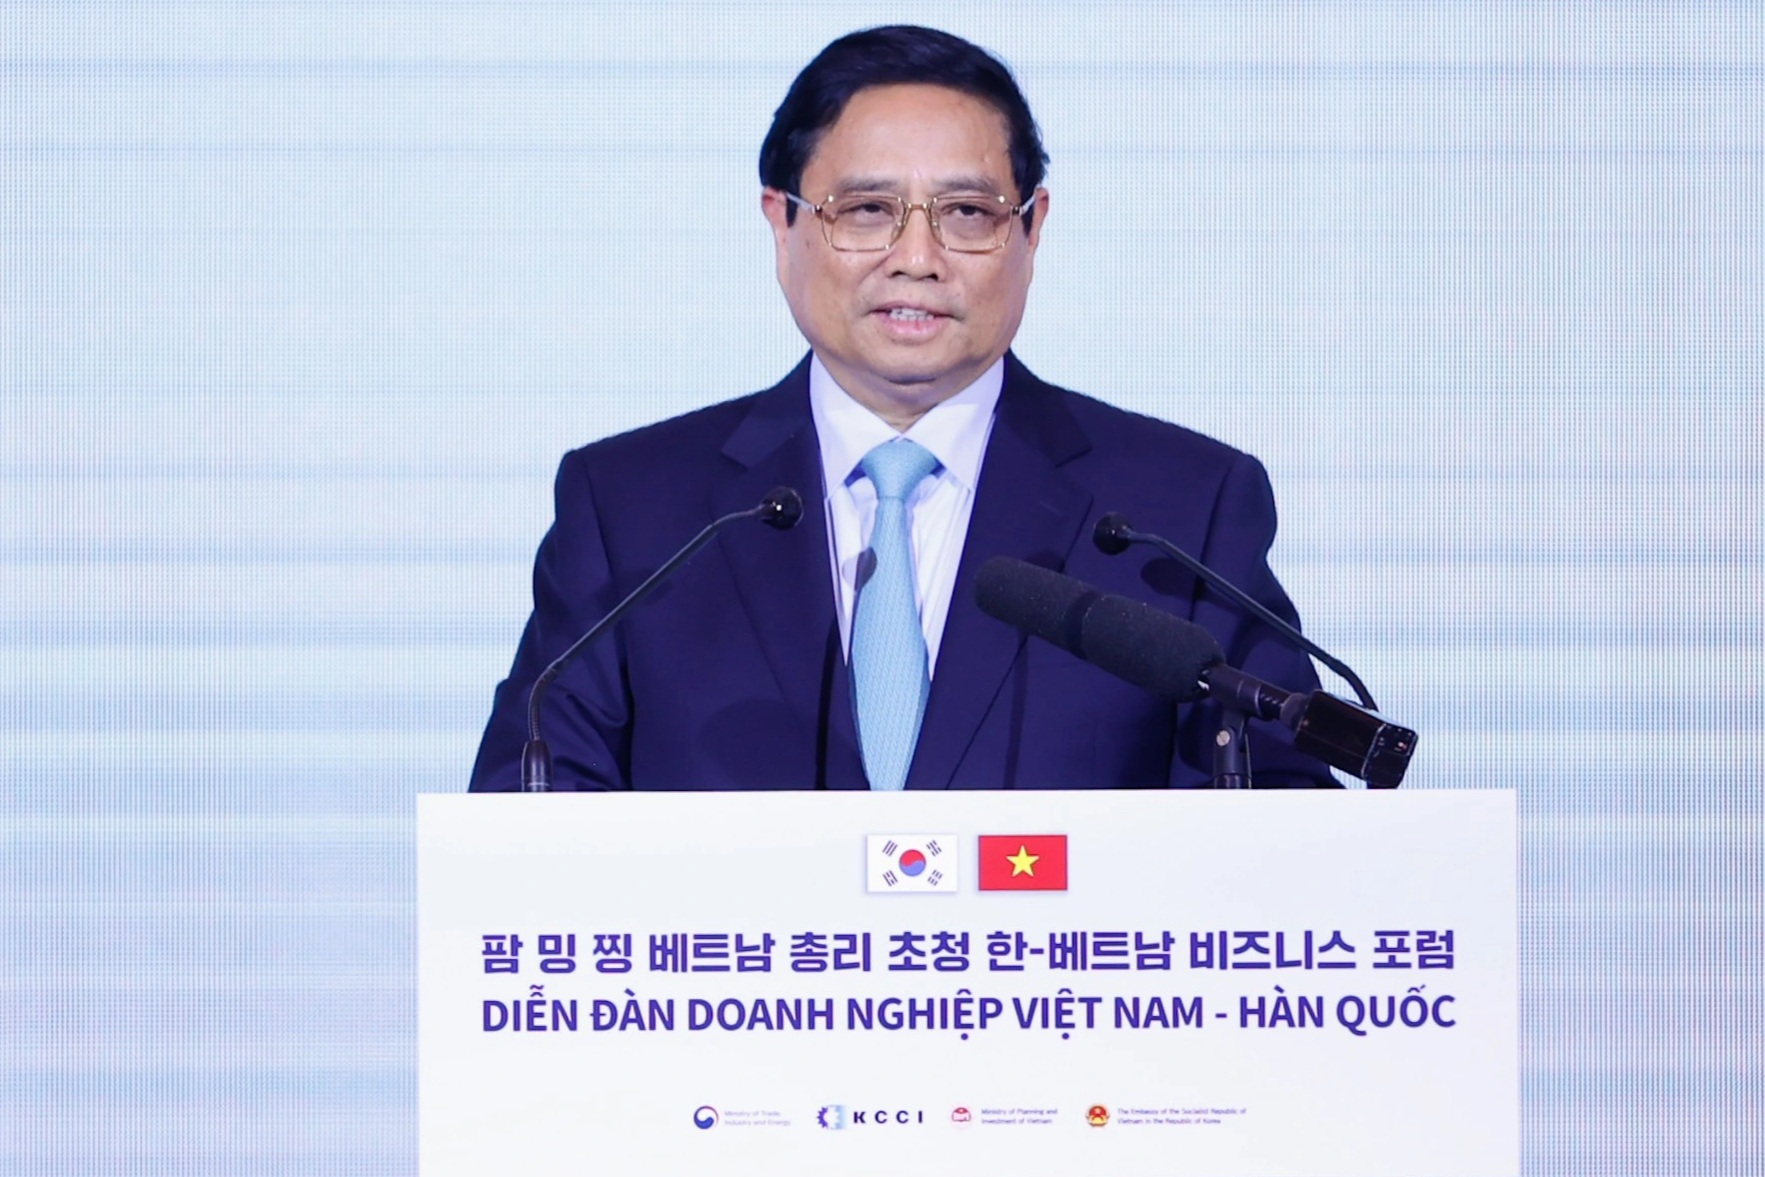 Thủ tướng thúc đẩy những chân trời hợp tác mới với doanh nghiệp Hàn Quốc - 3